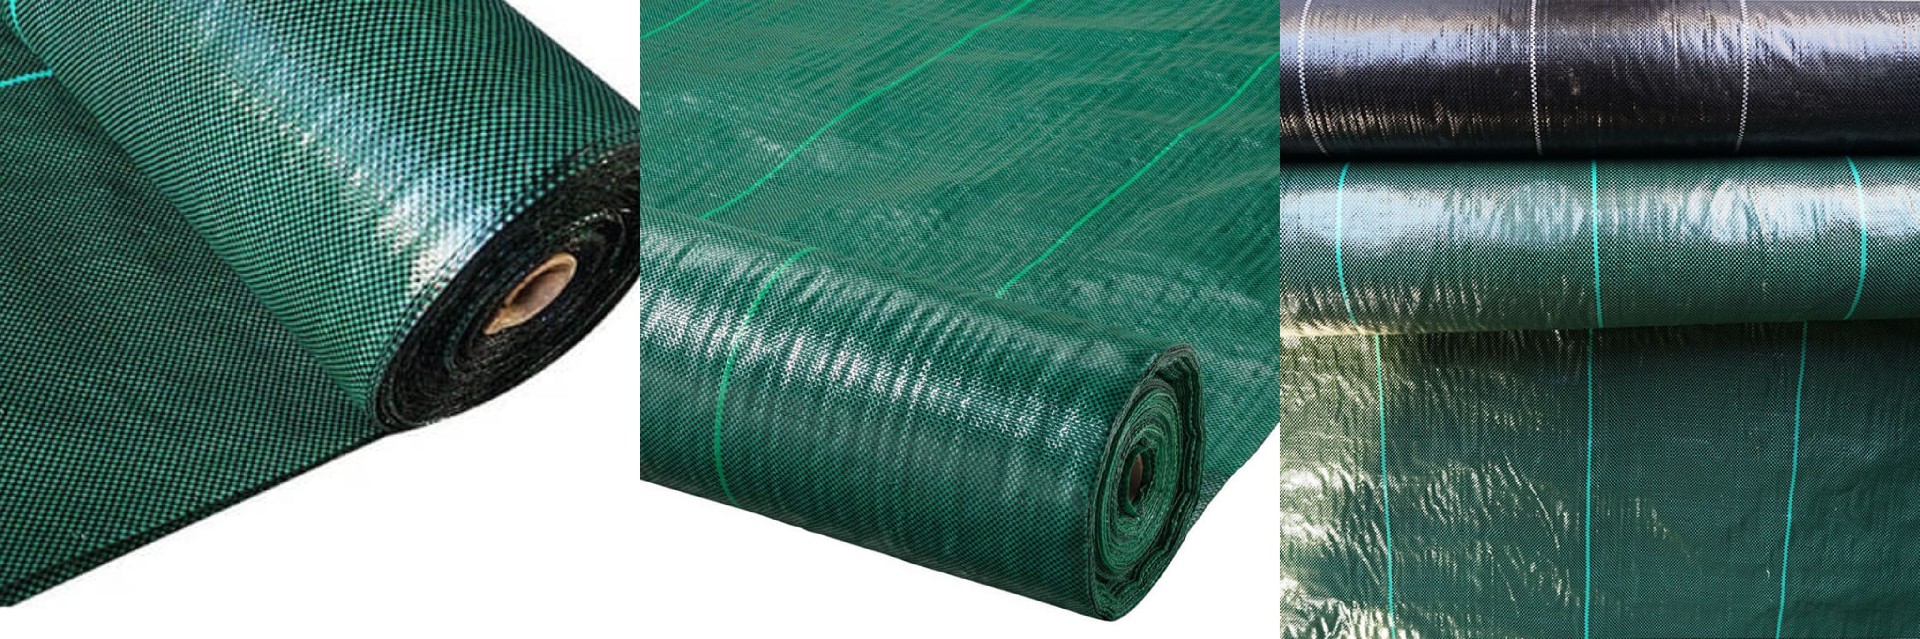 green mat detail.jpg